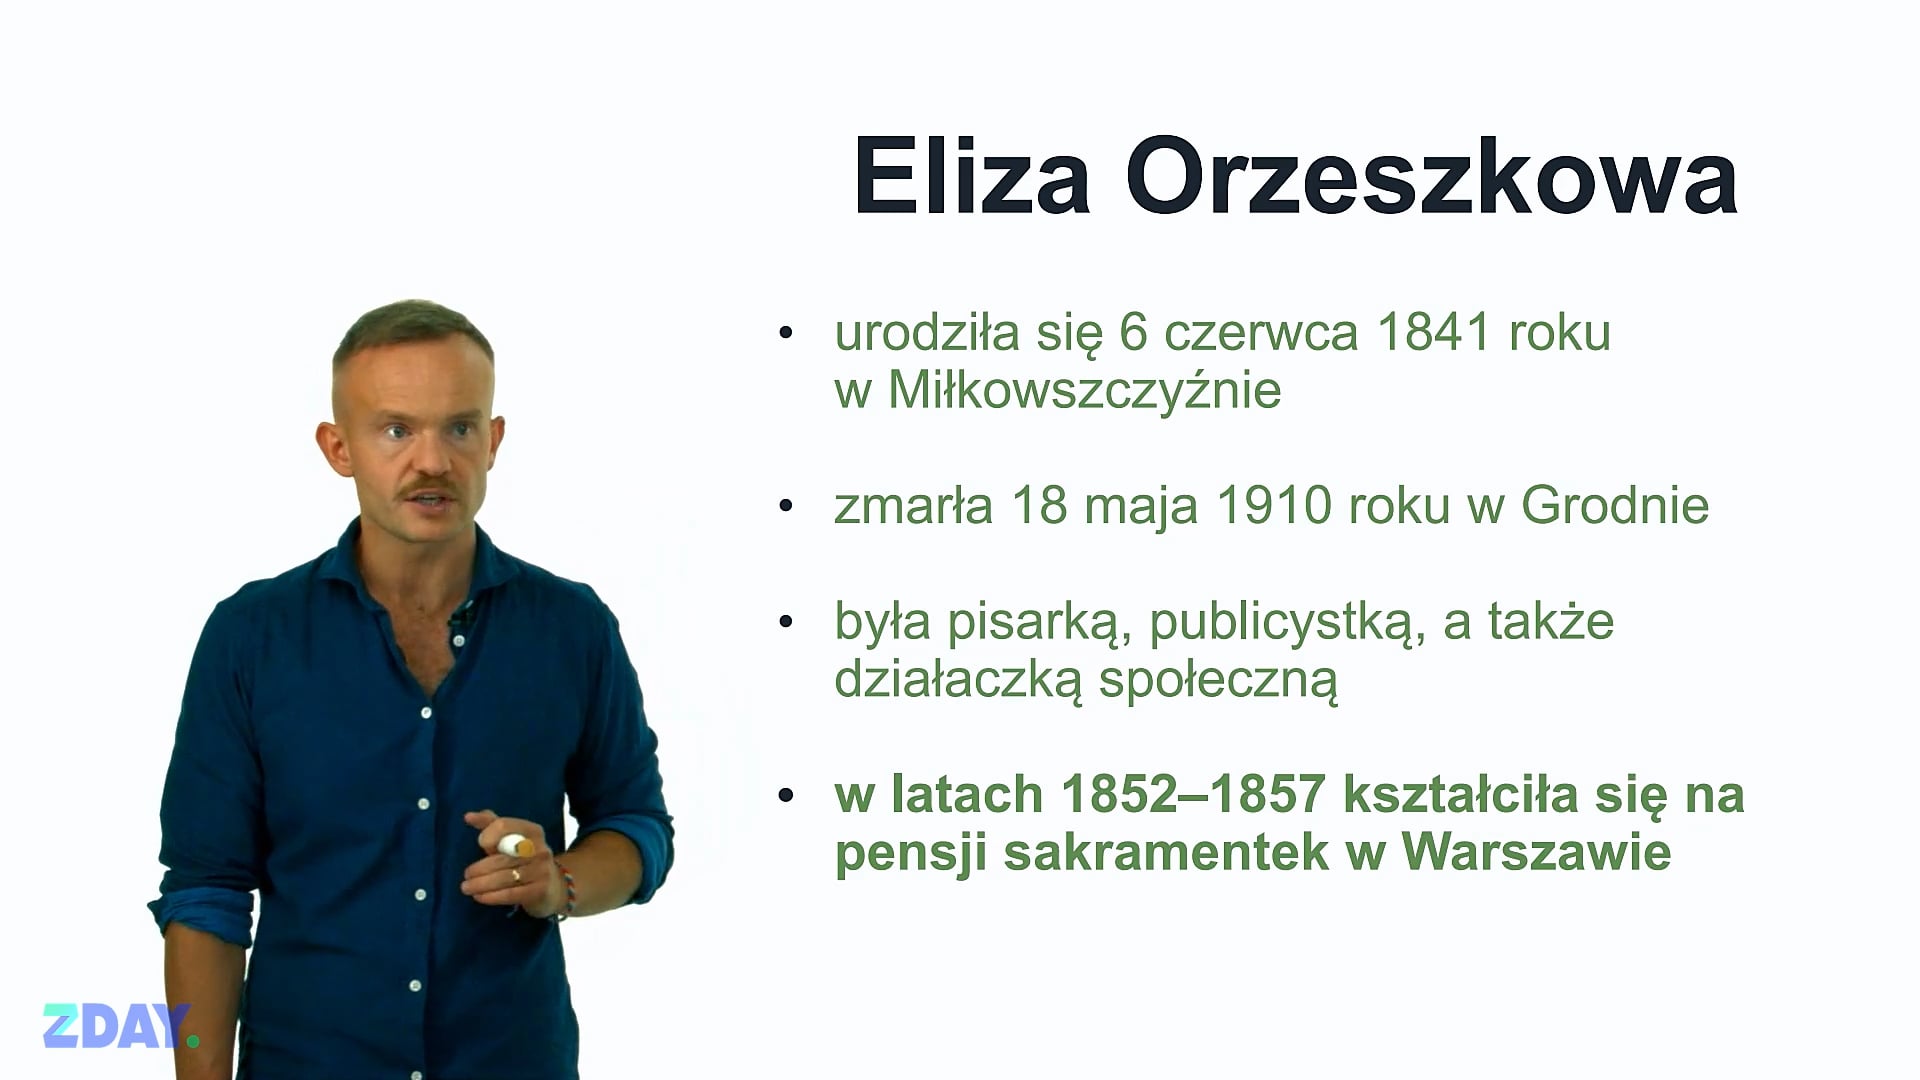 Miniaturka materiału wideo na temat: Eliza Orzeszkowa – o autorze. Kliknij, aby obejrzeć materiał.